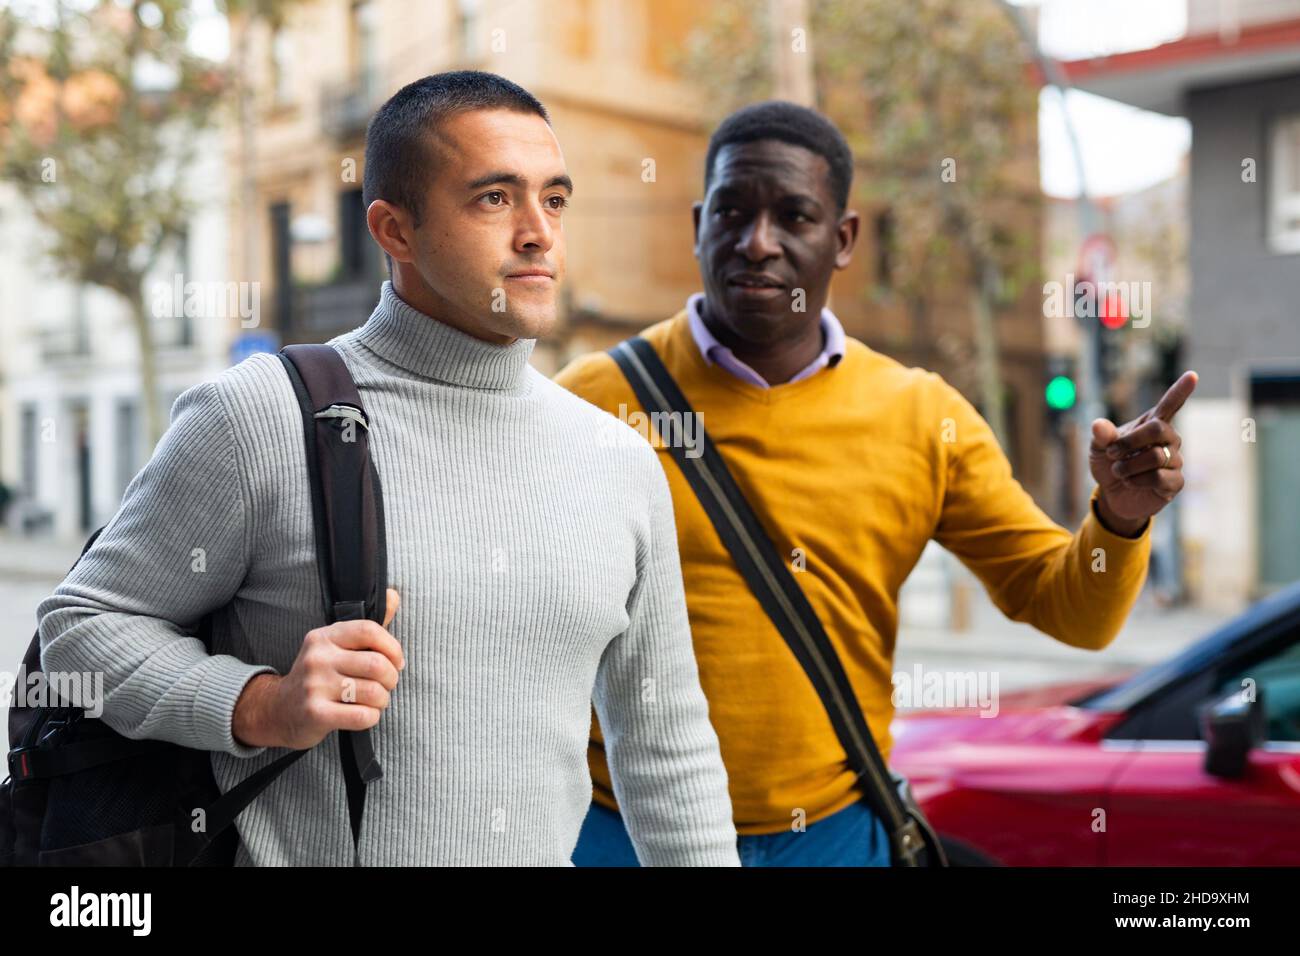 Two men going through town streets Stock Photo